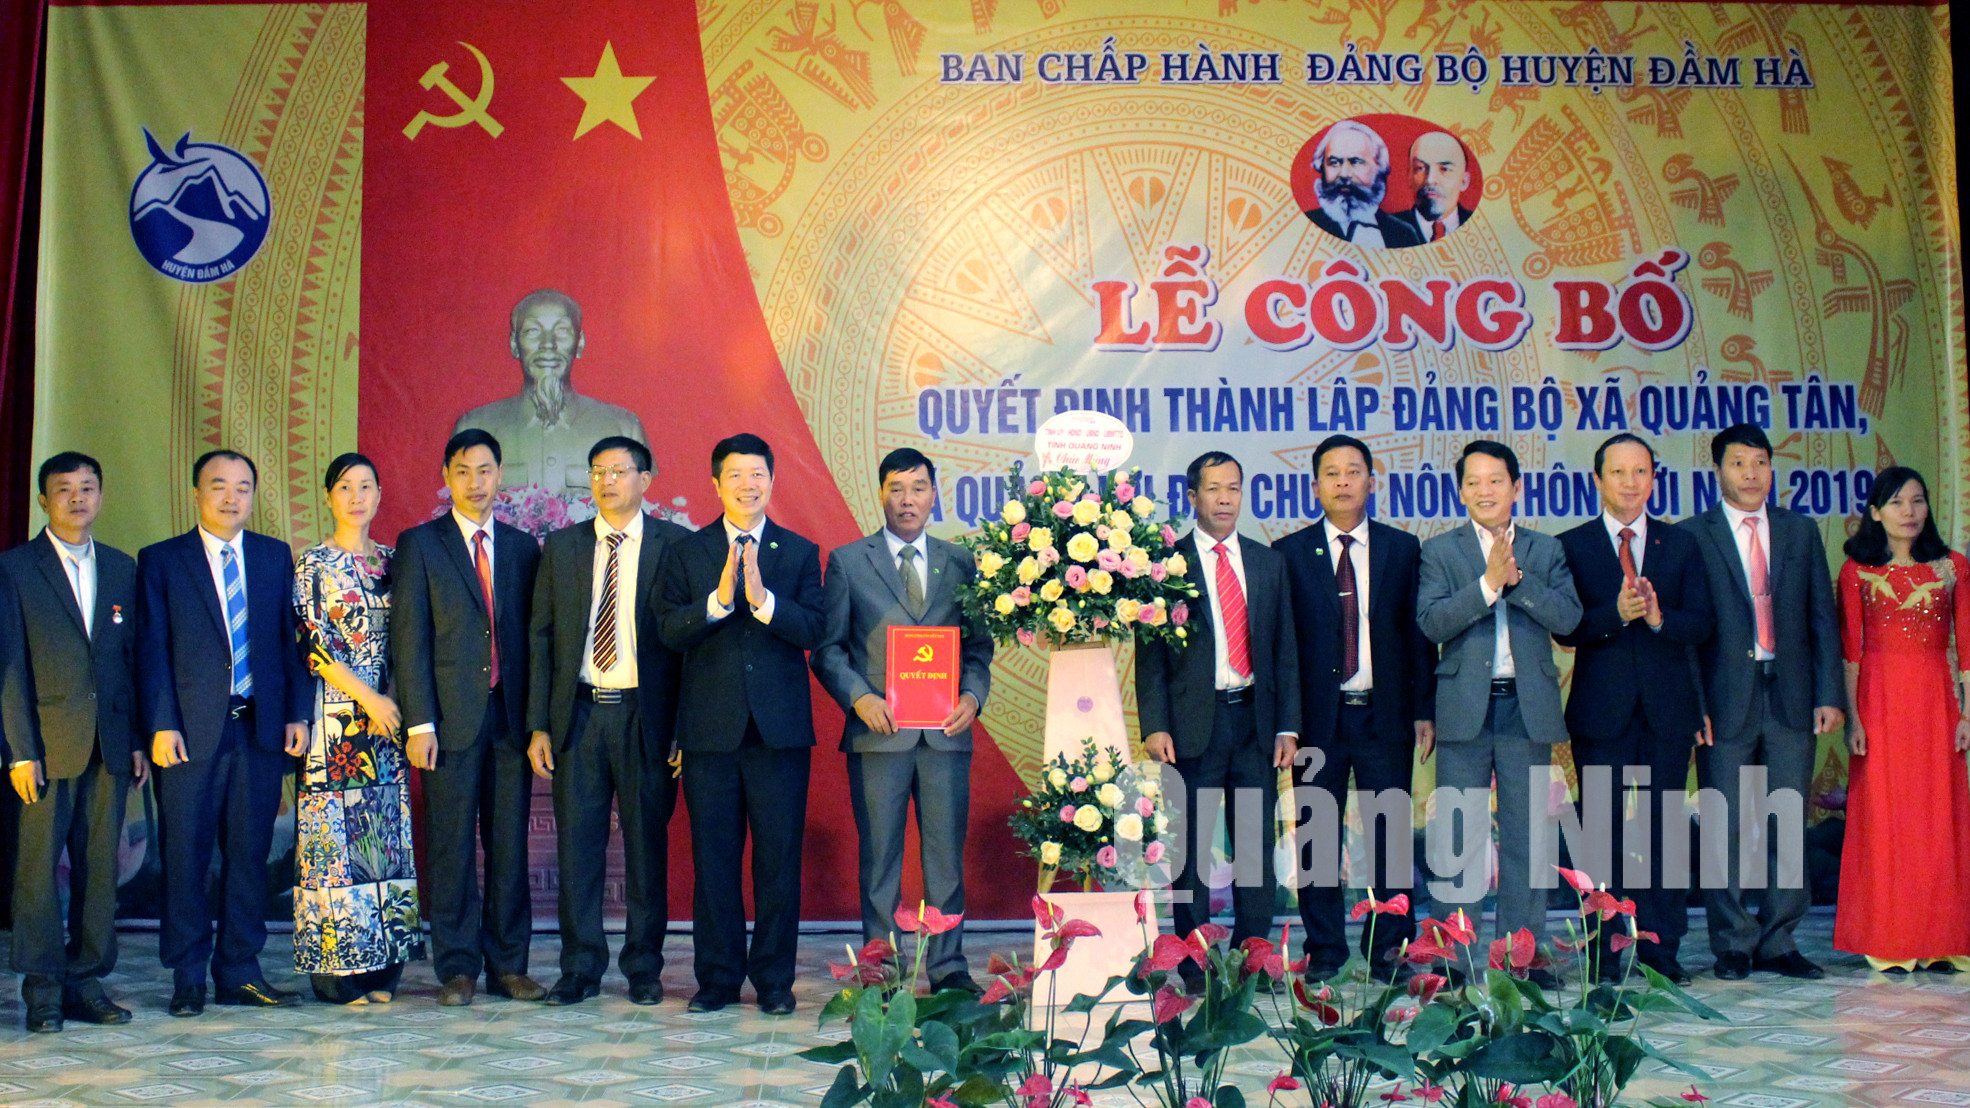 Tỉnh ủy, HĐND, UBND, UB MTTQ tỉnh gửi lẵng hoa chúc mừng cán bộ và nhân dân xã Quảng Tân mới (2-2020). Ảnh Hữu Việt